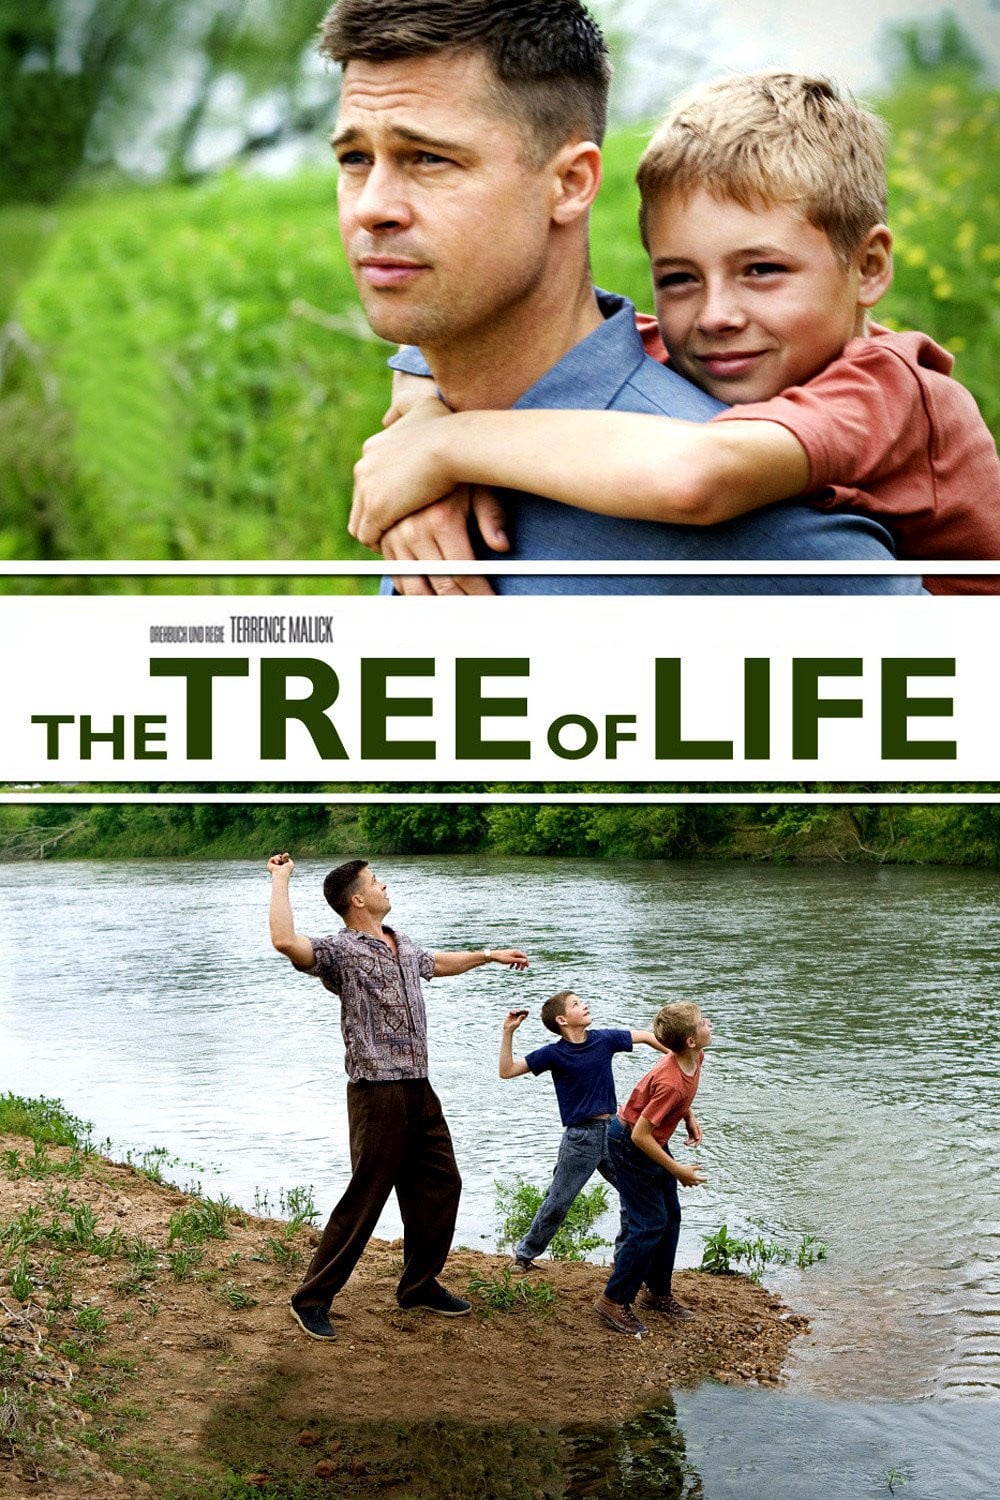 Plakat von "The Tree of Life"